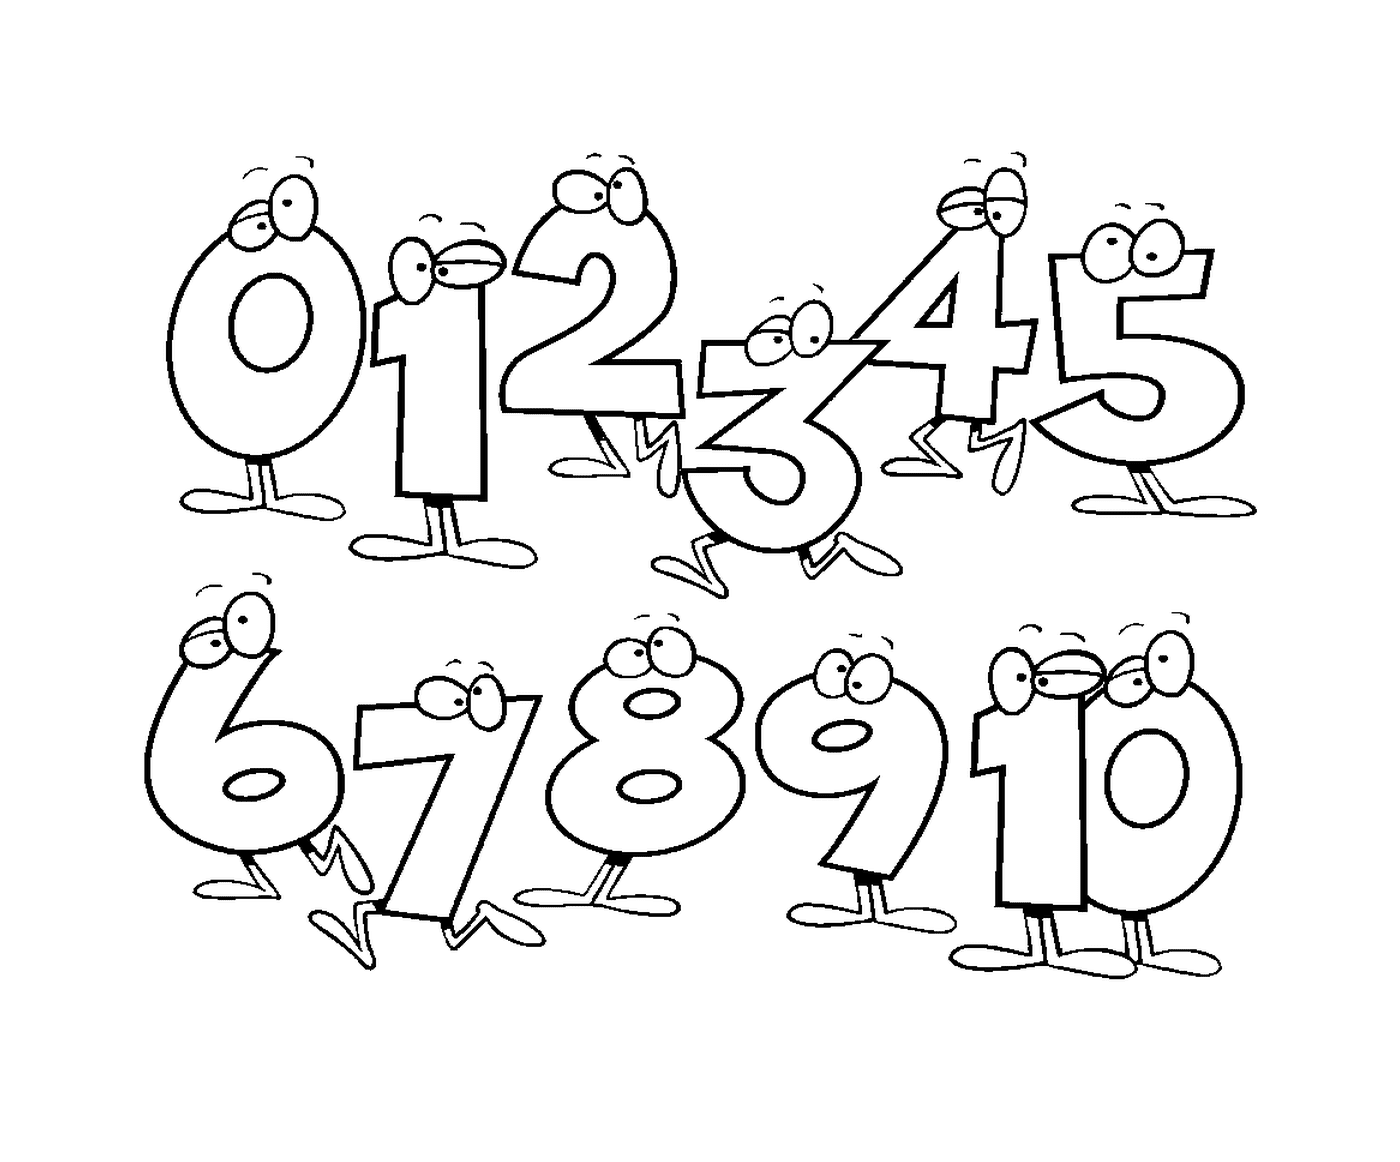   Ensemble de chiffres dessinés de façon caricaturale de zéro à dix 